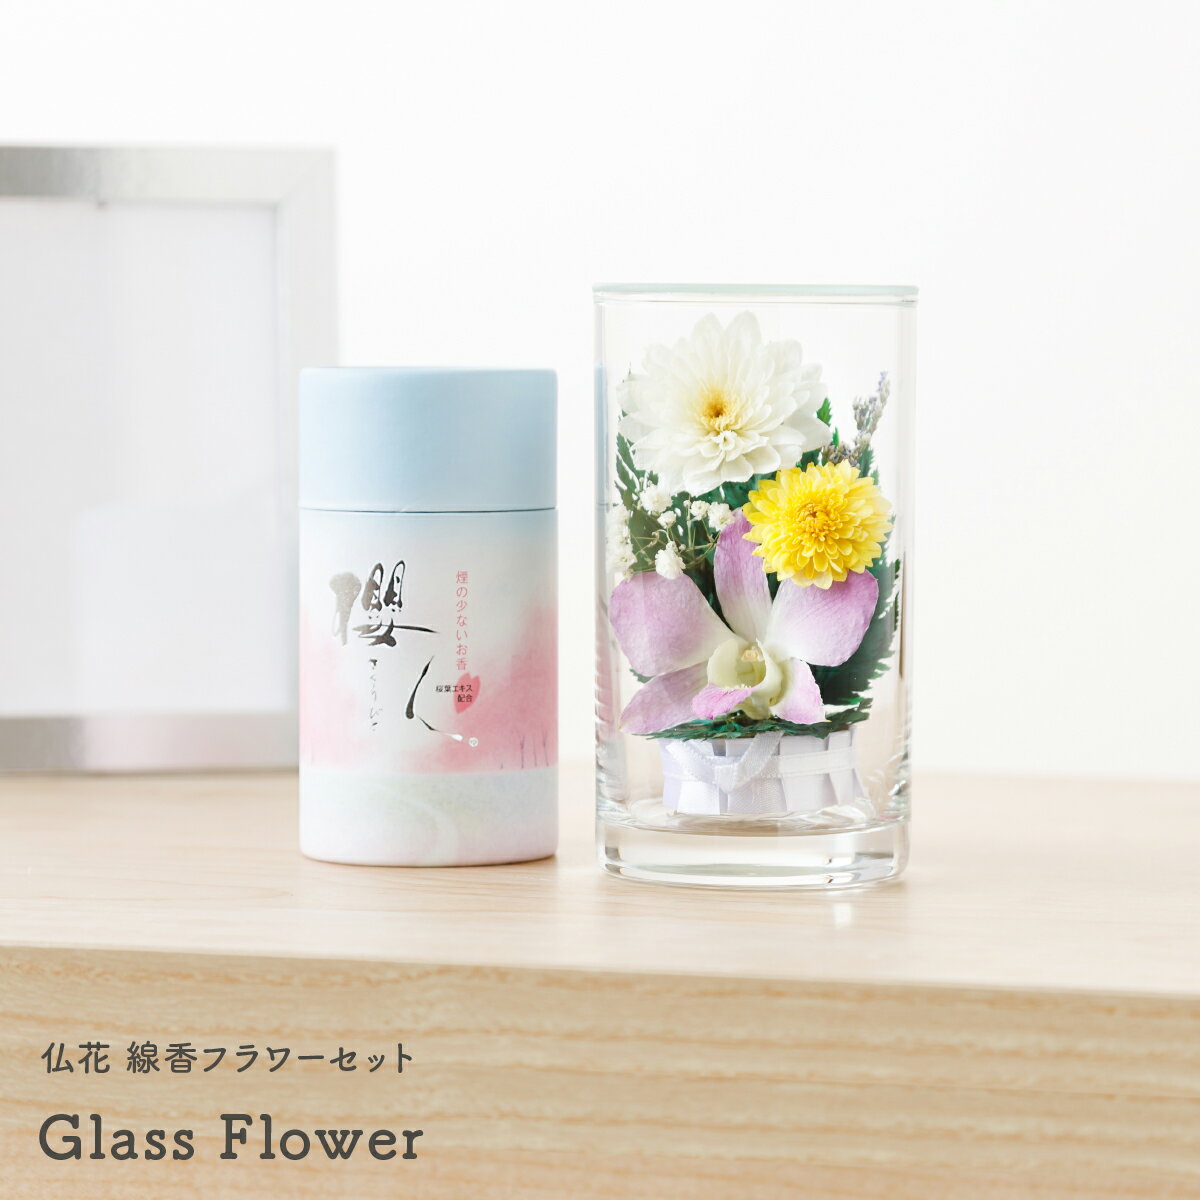    ~ ~ V~ Mtg ̓ Glass Flower STCY+ t[Zbg ފ hV̓  H d 